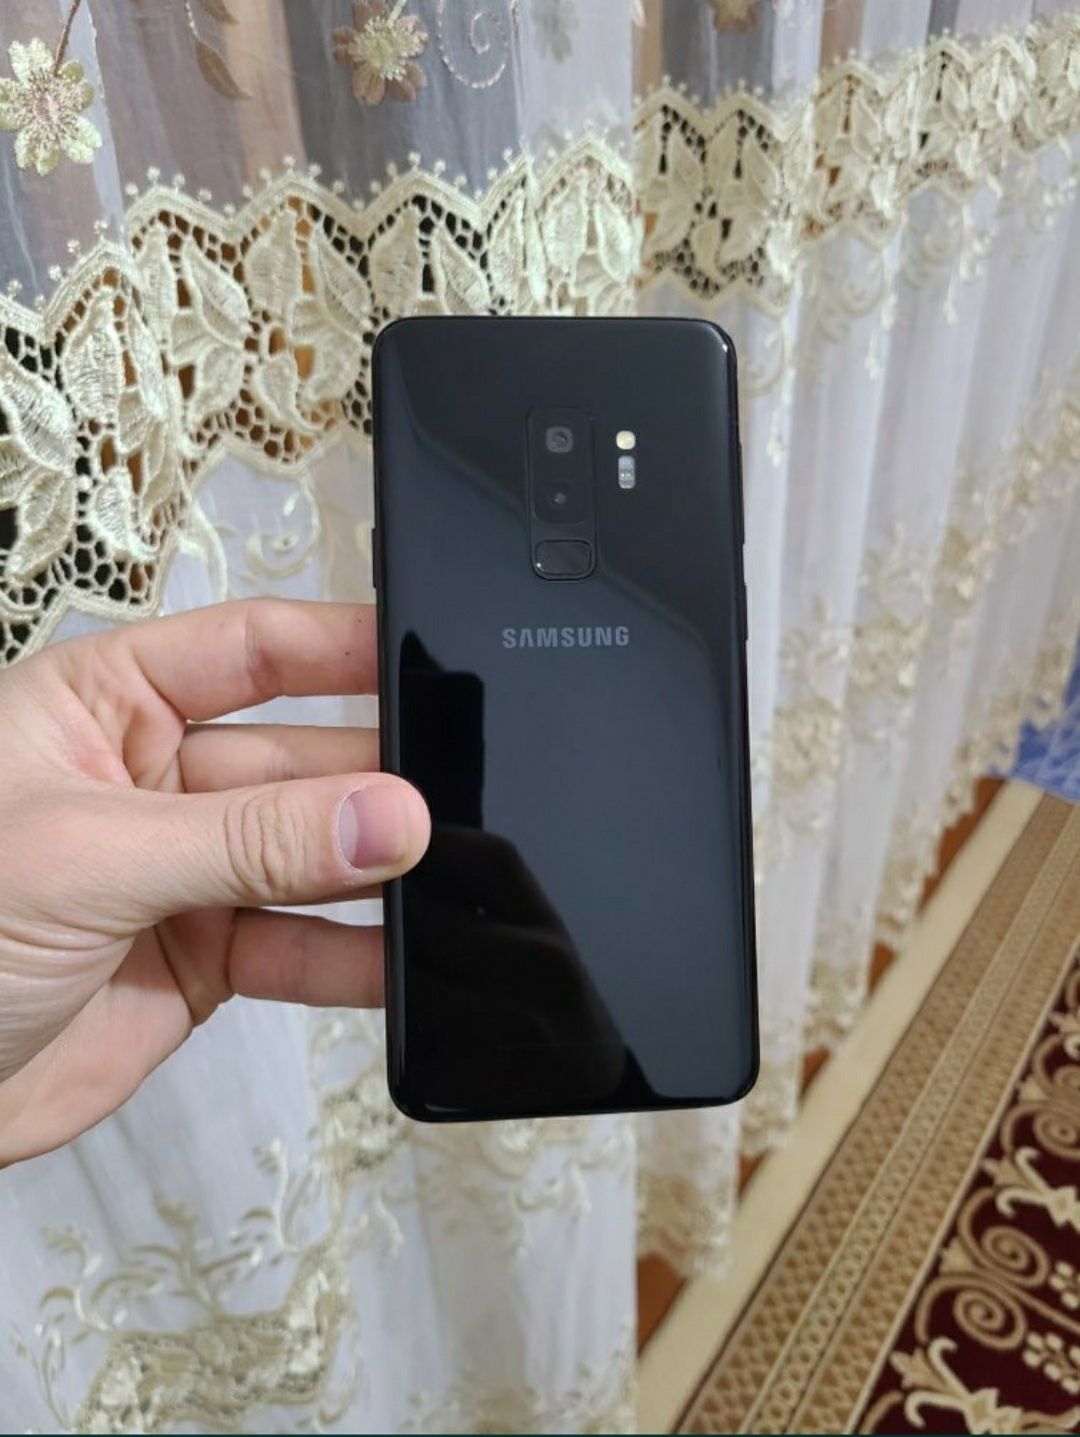 Samsung S9+ idyal
Narx:100$
Abmen yuq
Xotira/64
Kar.Dak/bor Full
Oynas